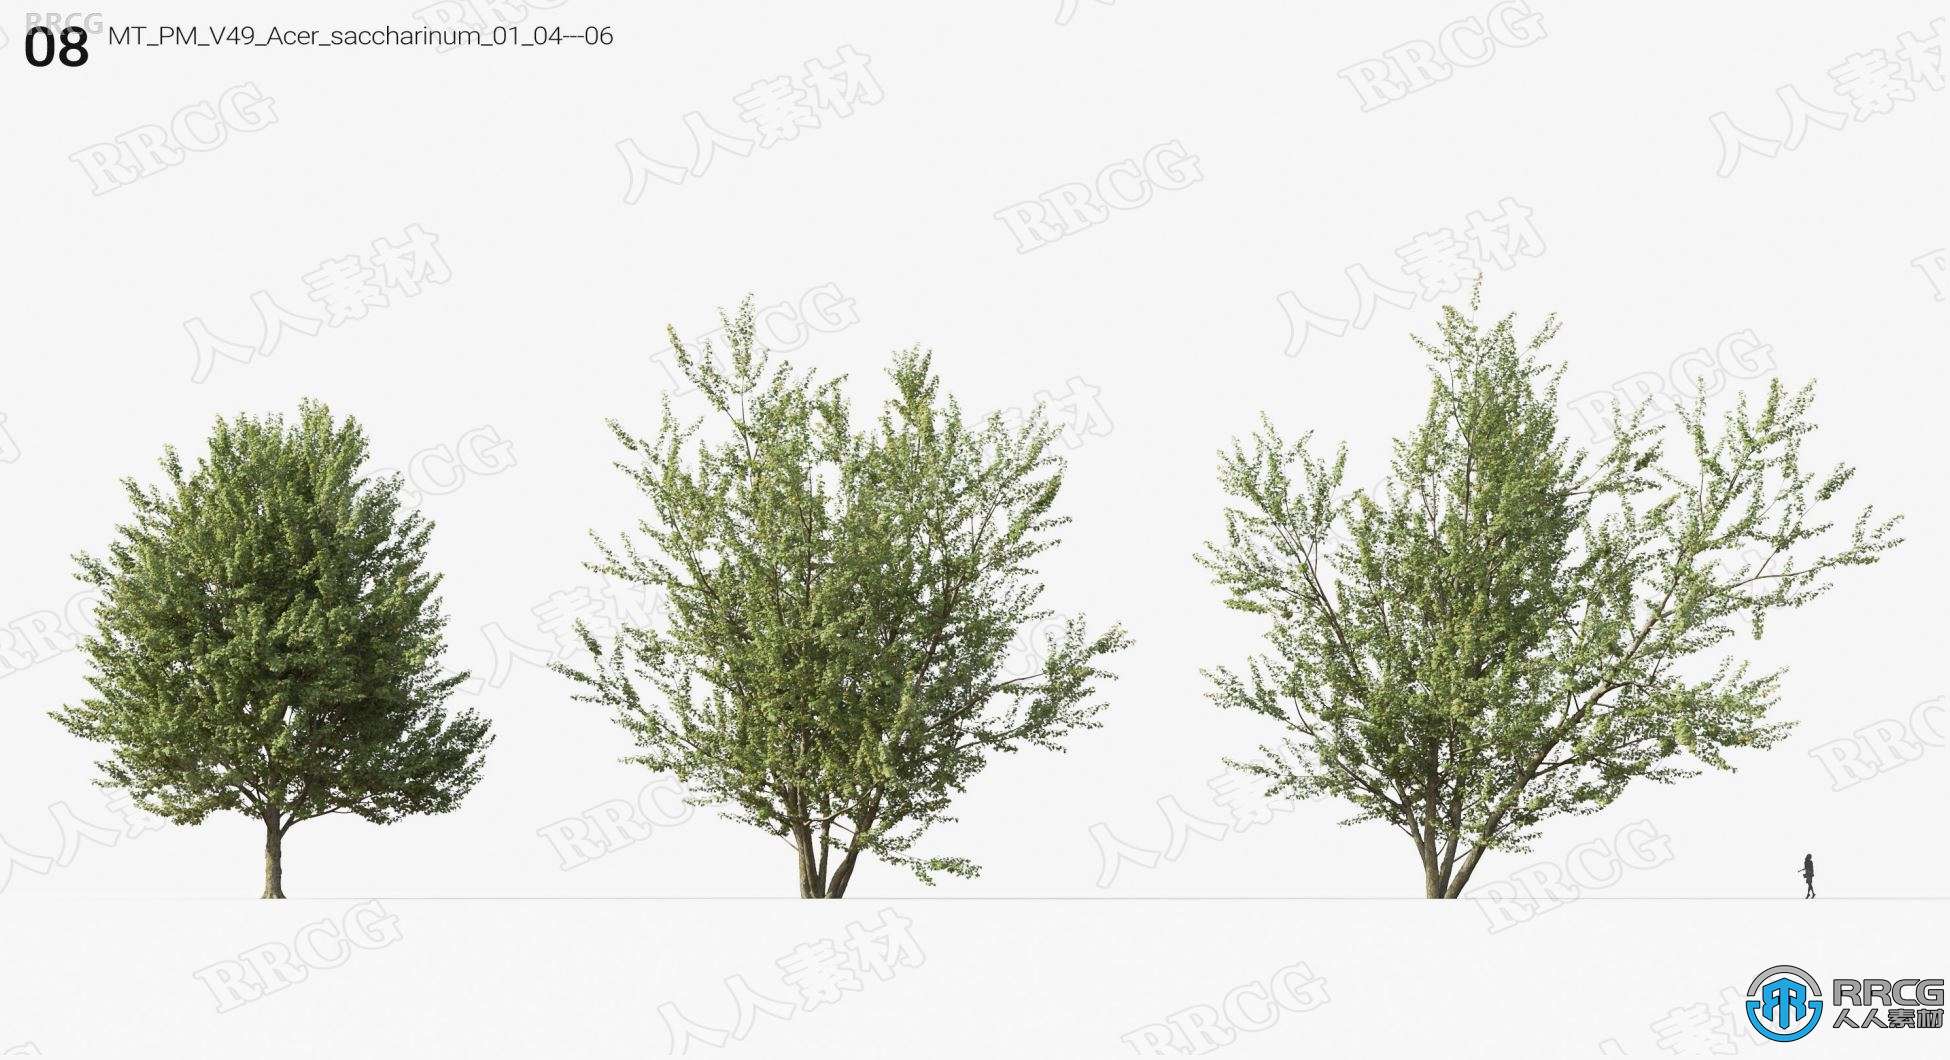 高质量桤木楮树桉树等树木植物3D模型合集